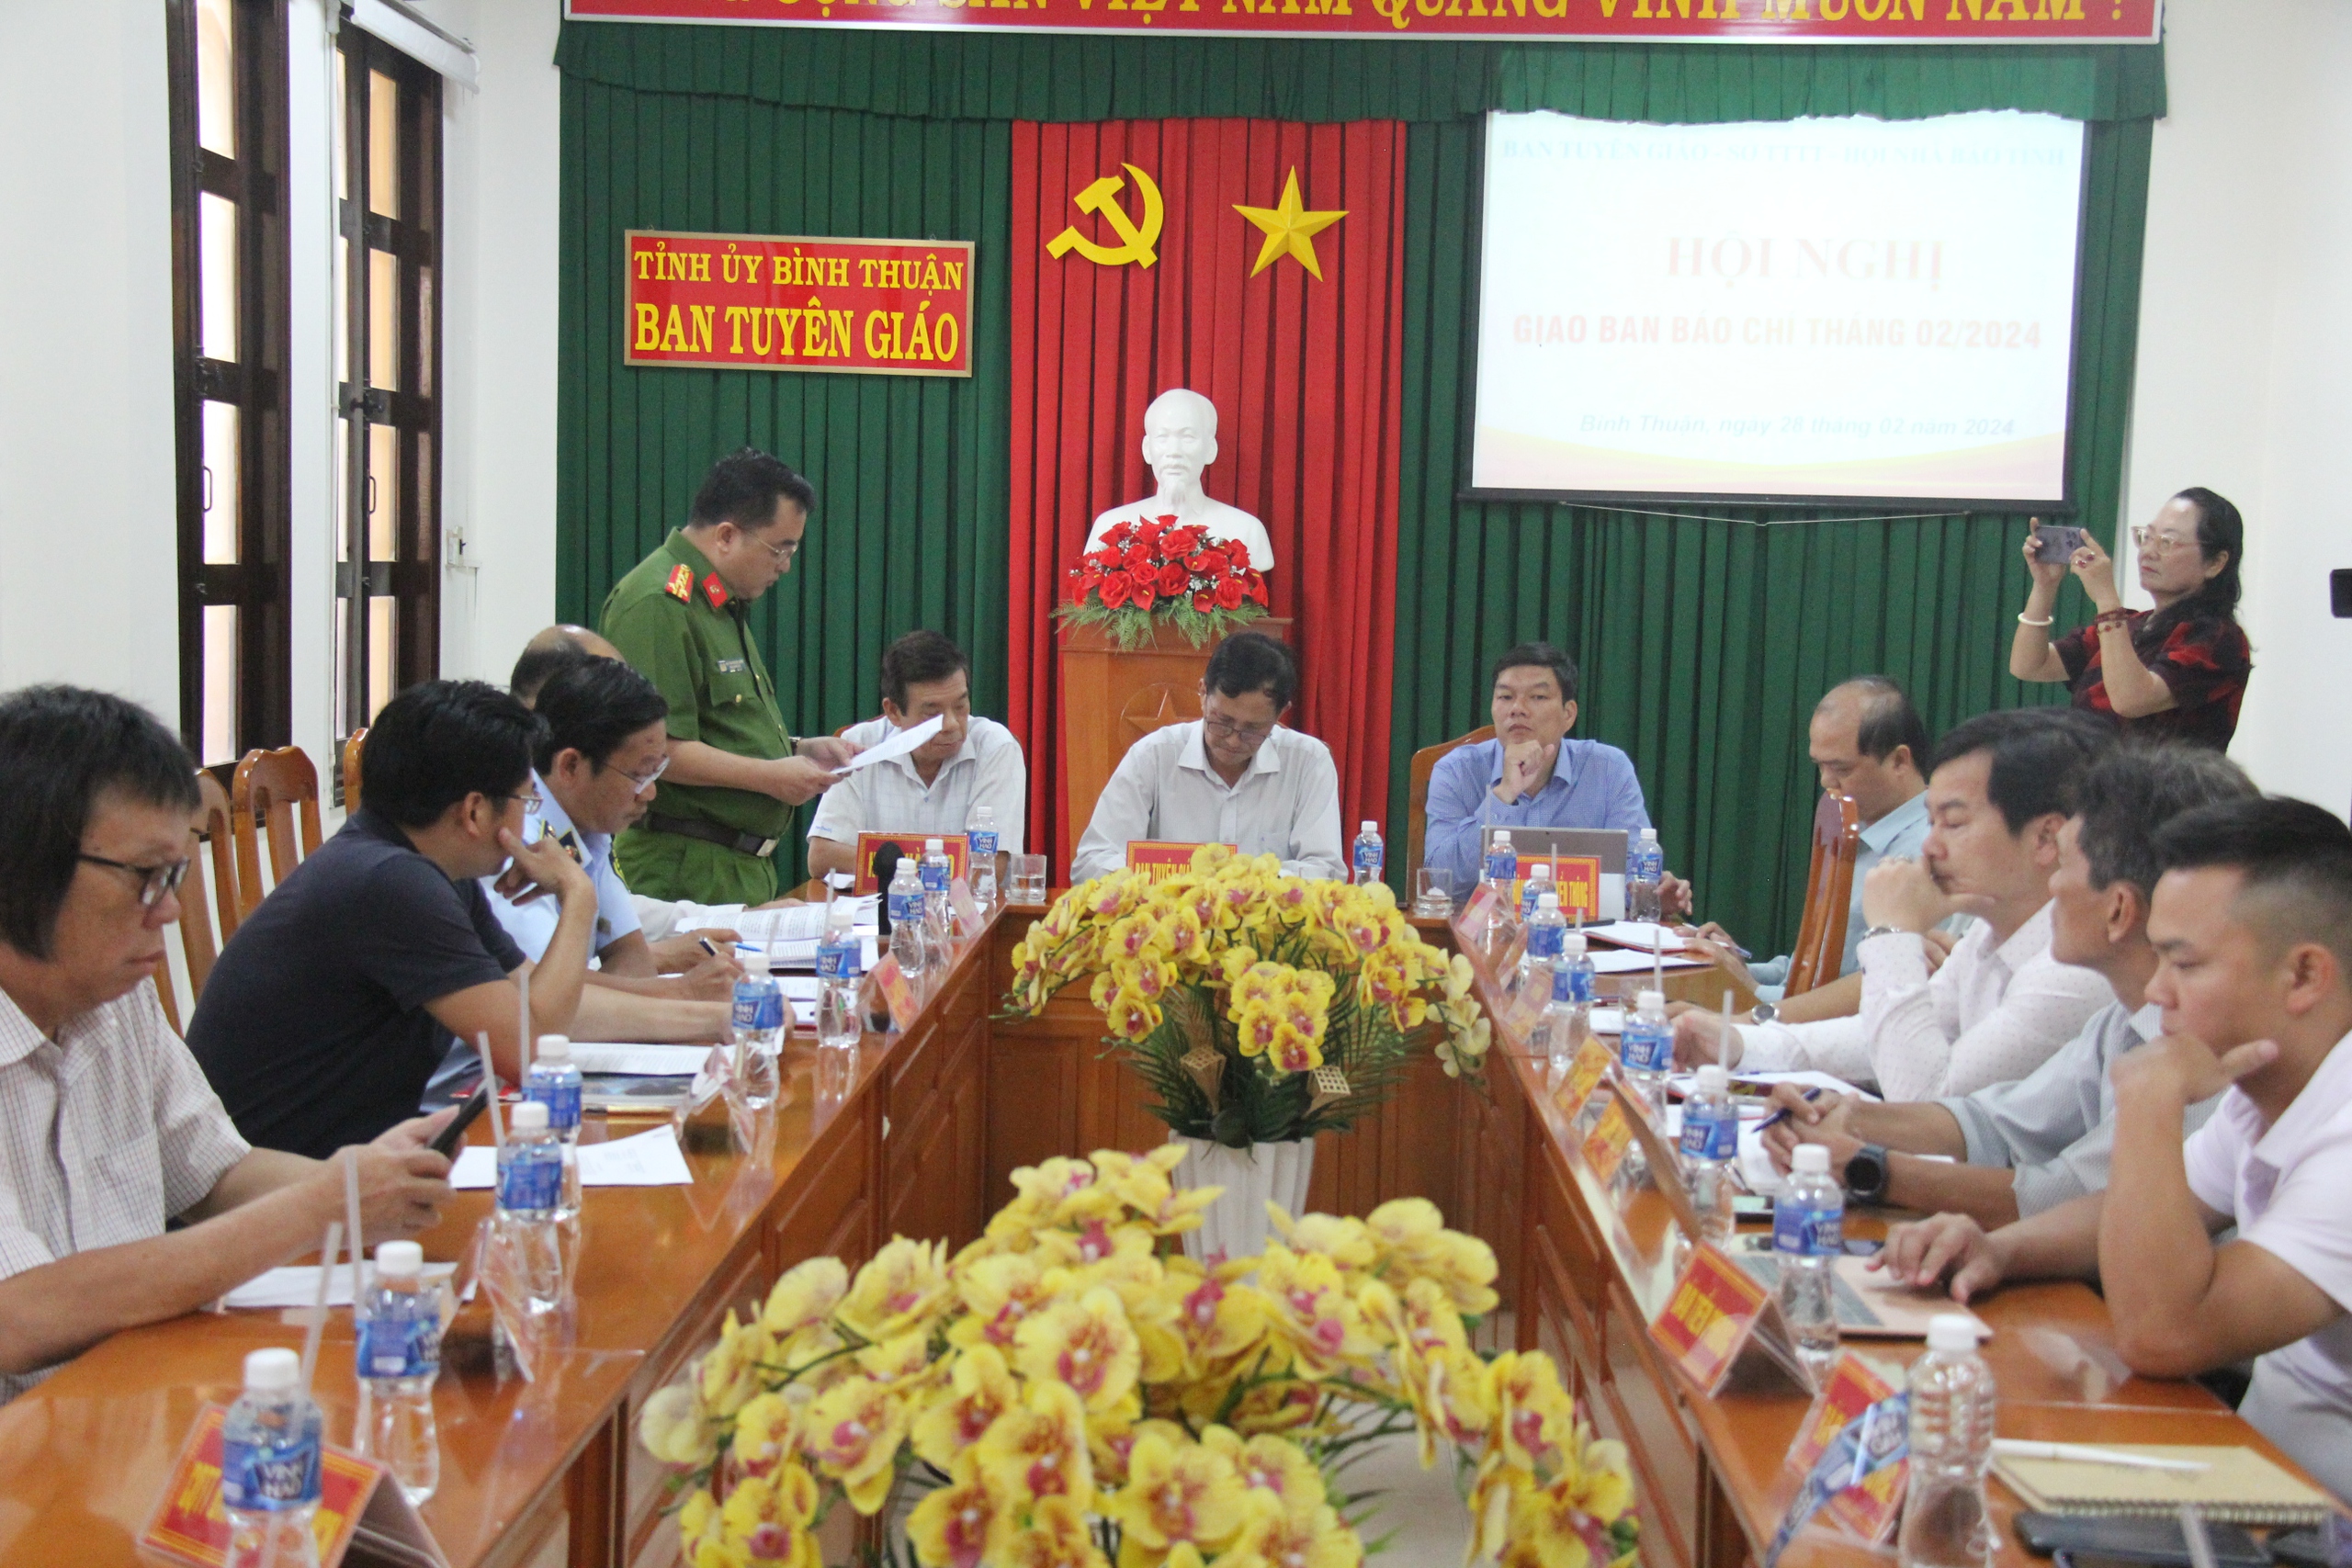 Bình Thuận kiểm điểm hơn 30 trường hợp cán bộ vi phạm nồng độ cồn- Ảnh 1.